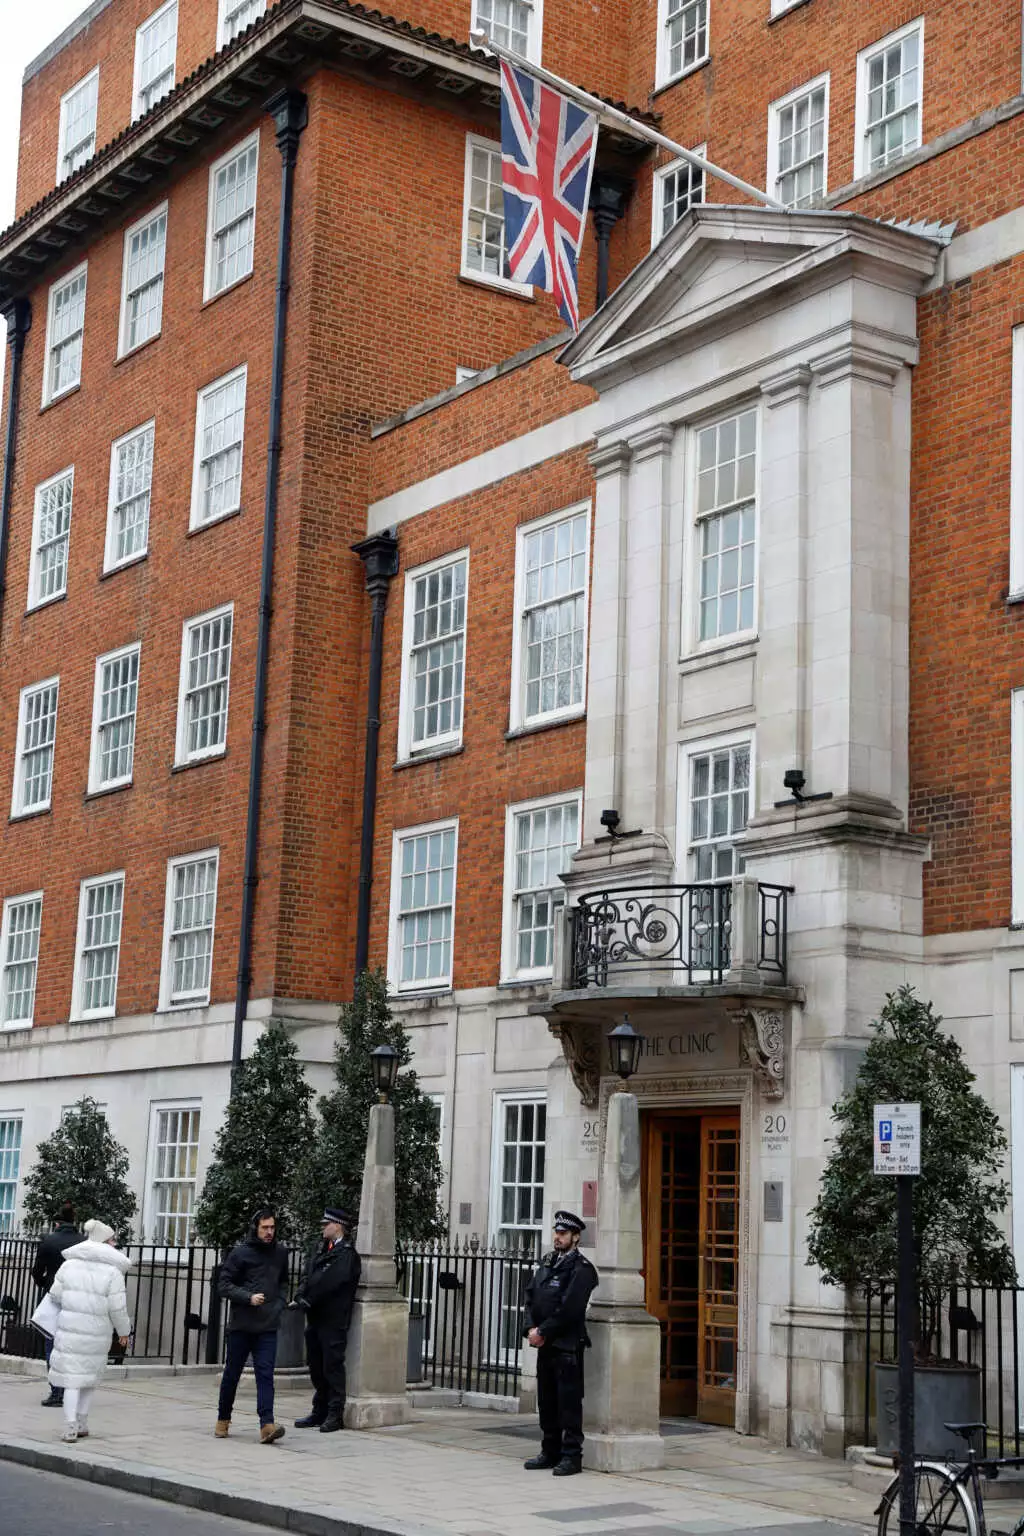 Βρετανία: Η Κέιτ Μίντλετον χειρουργήθηκε στο νοσοκομείο των VIP